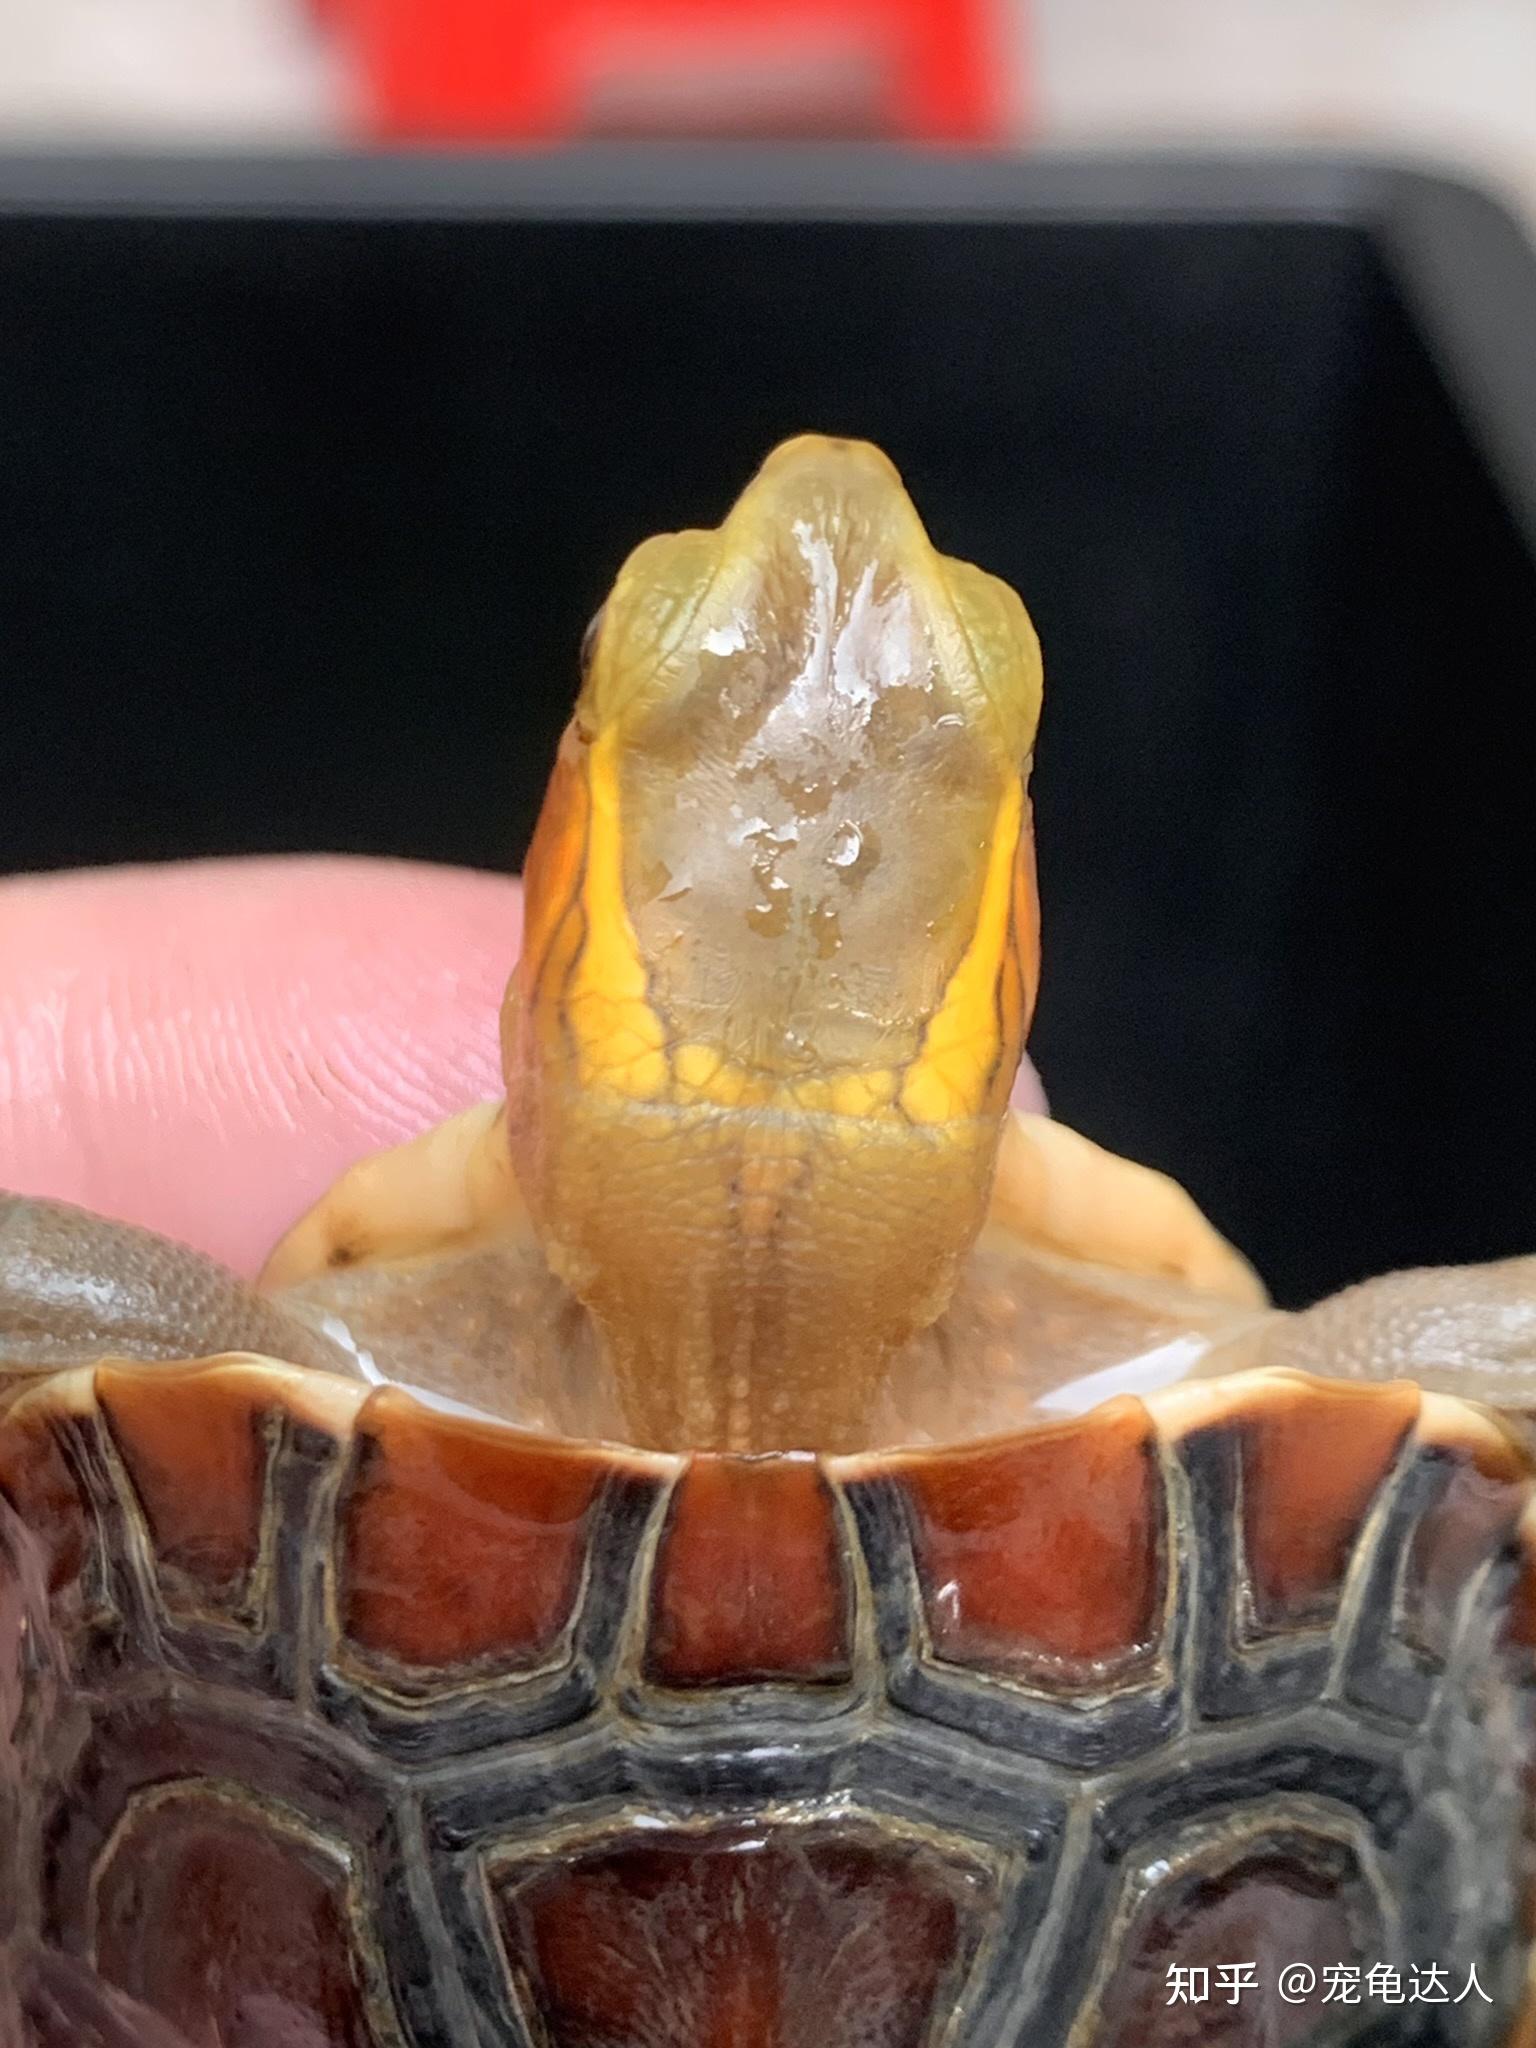 分享黄缘龟的特征